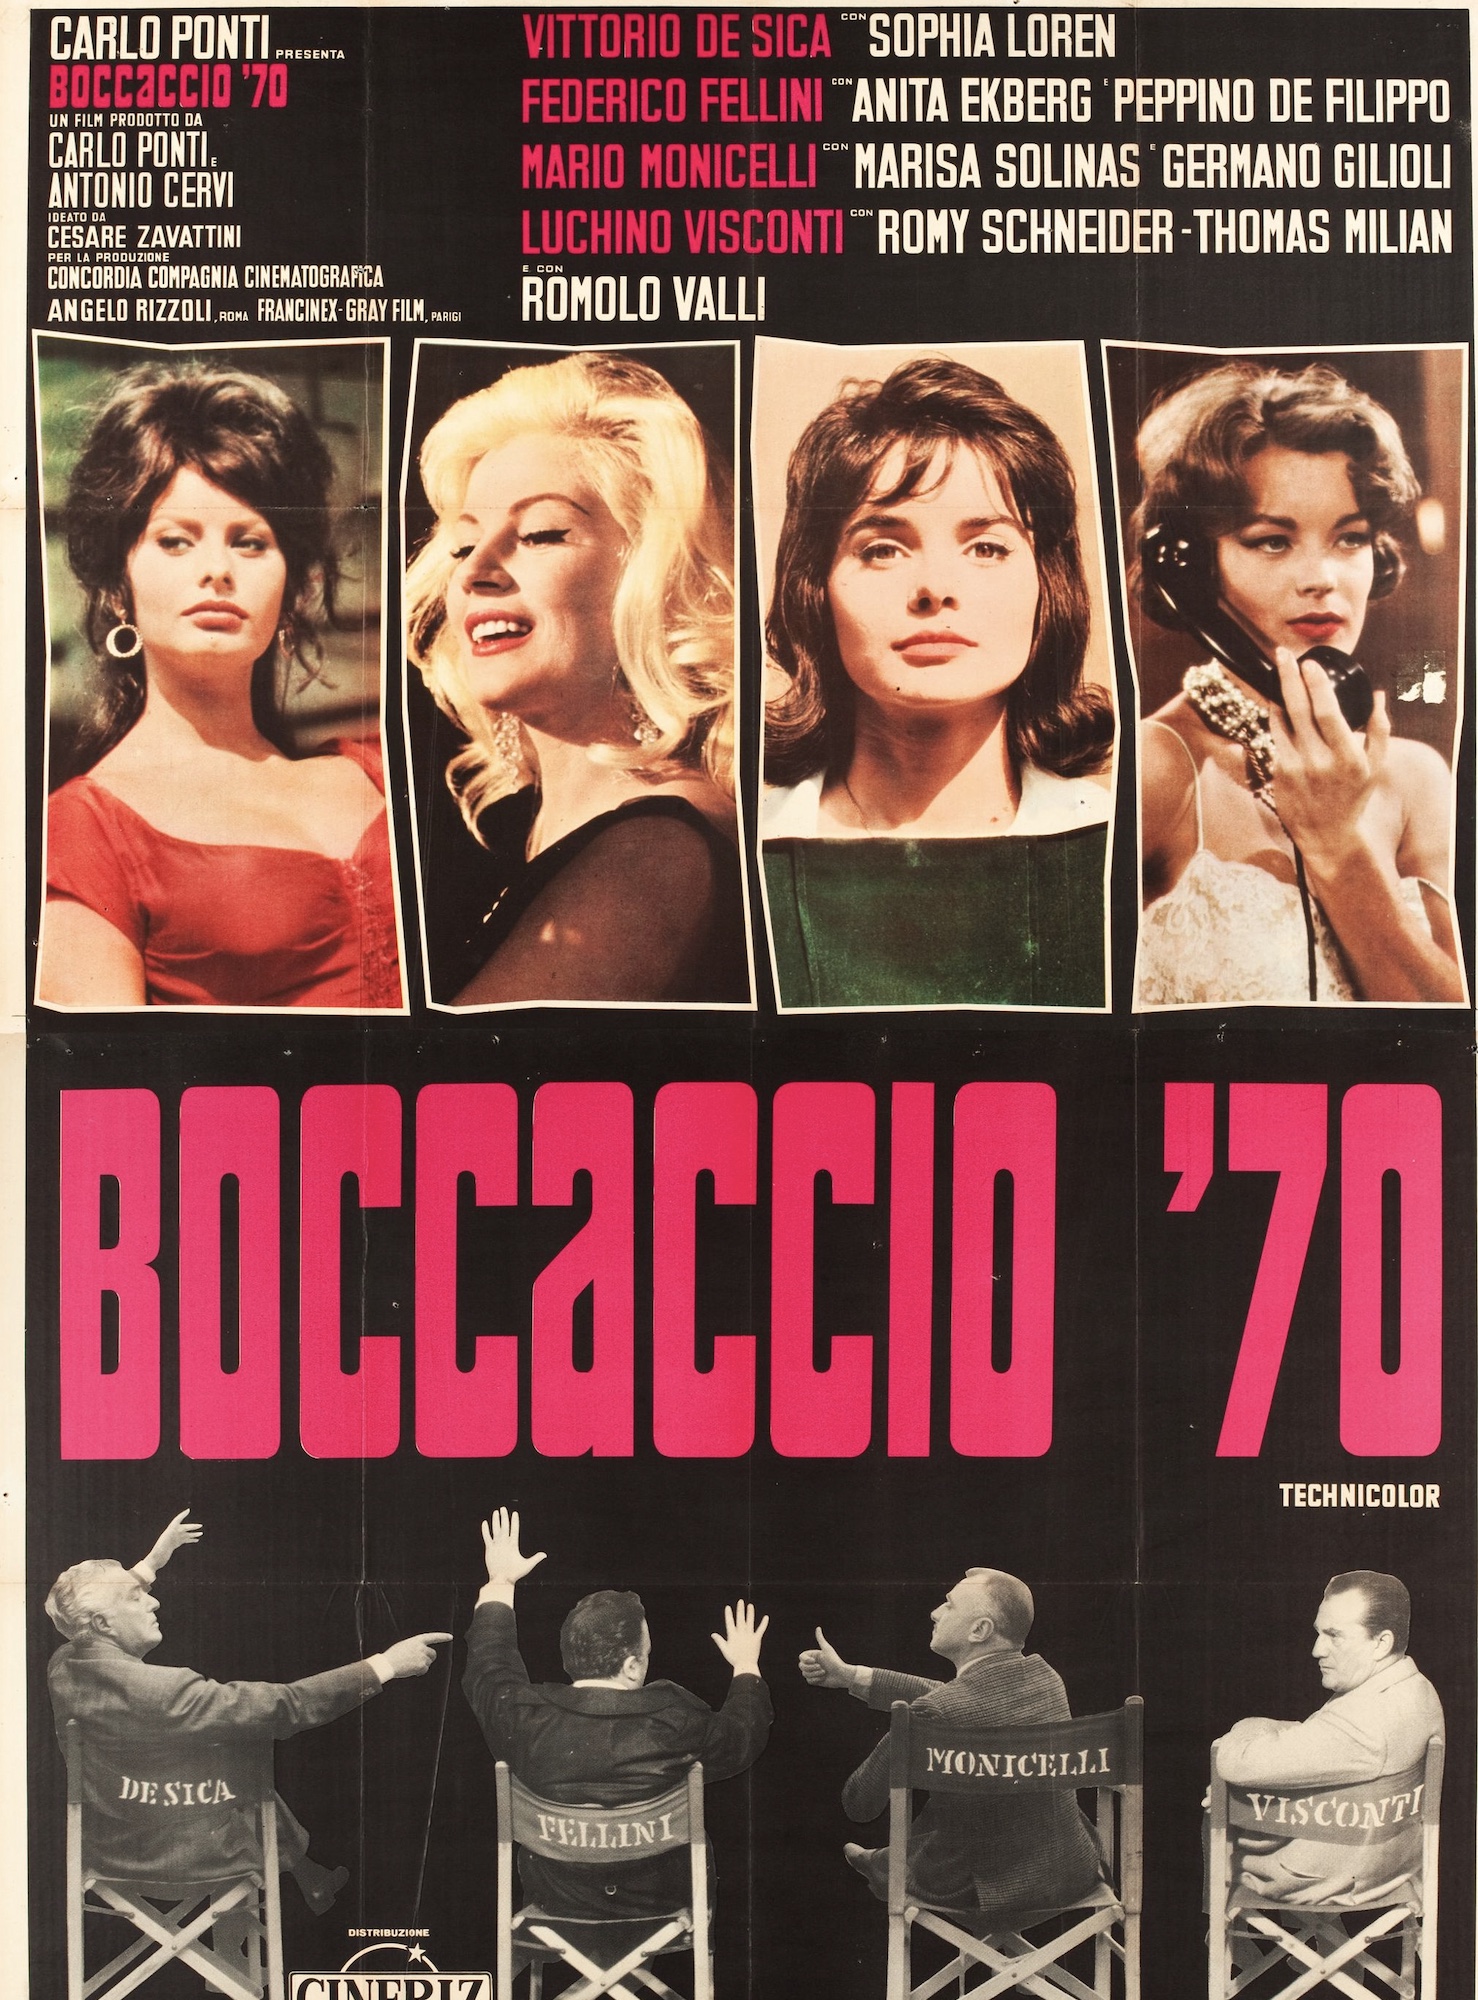 Boccaccio ’70 Elementare